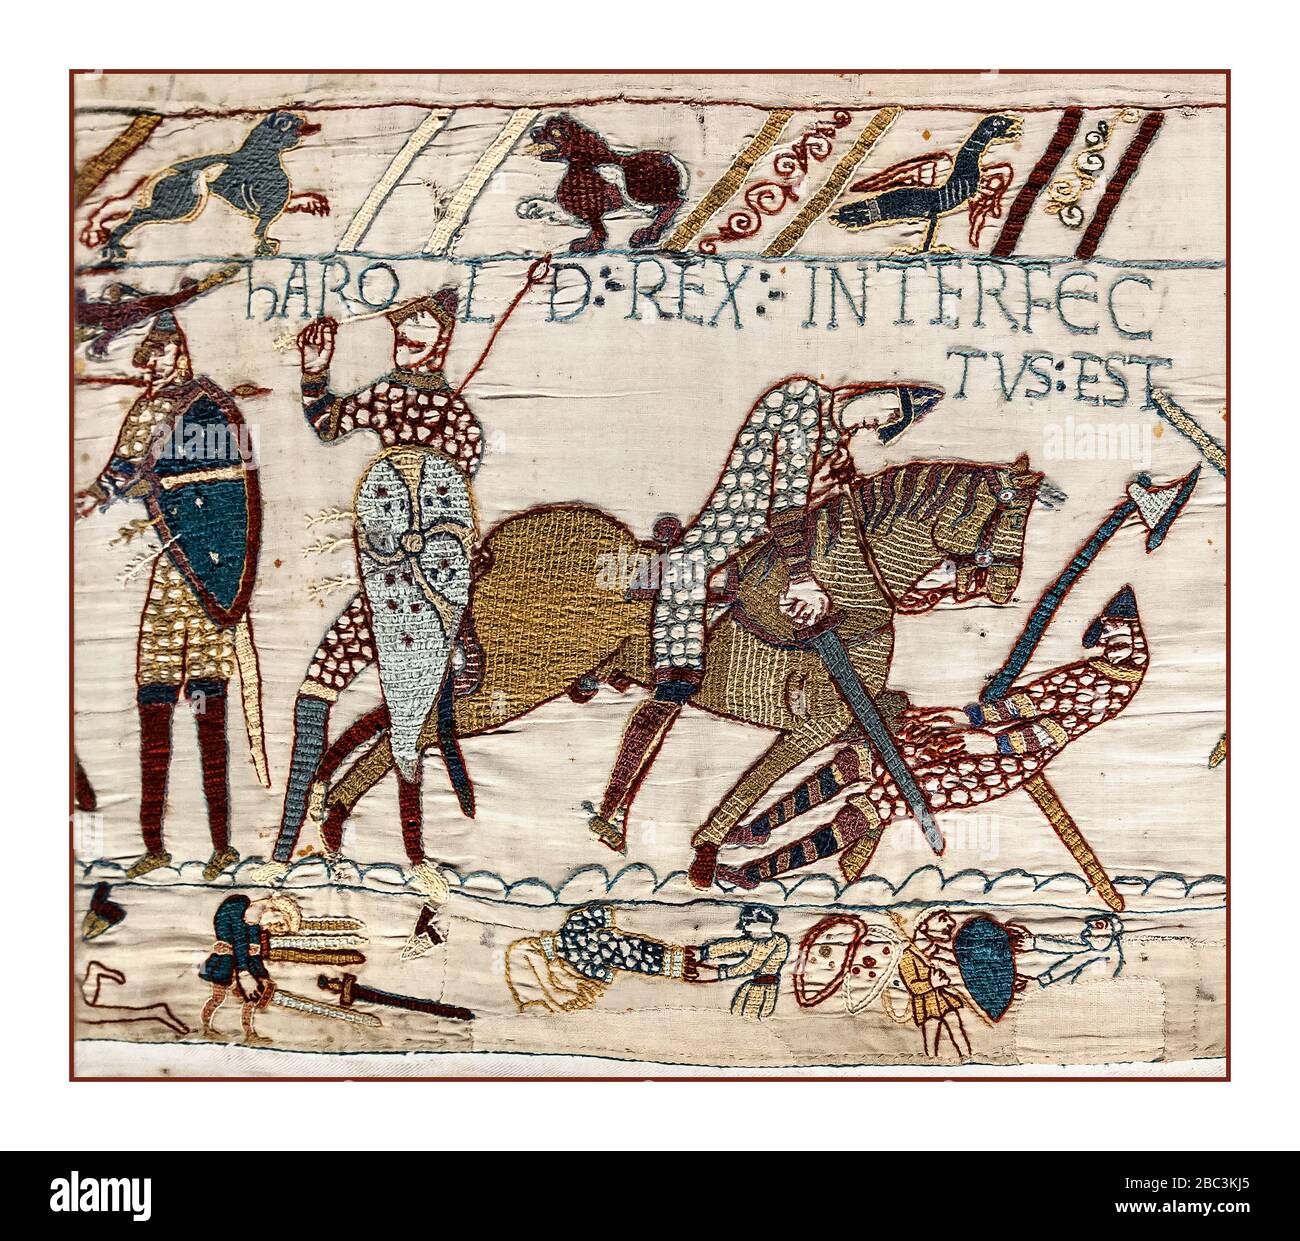 LA MORT DE LA TAPISSERIE DE BAYEUX Harold Rex Interfectus est: 'Le roi Harold a été tué'. Scène de la Tapisserie de Bayeux représentant la bataille de Hastings et la mort du roi Harold, image de la scène de la Tapisserie de Bayeux 87. 14 octobre 1066 bataille près de Hastings, dans l'est du Sussex, en Angleterre, victoire décisive de Norman. La bataille de Hastings a été menée le 14 octobre 1066 entre l'armée normande-française de William, le duc de Normandie, et une armée anglaise sous le roi anglo-saxon Harold Godwinson, qui a commencé la conquête normande de l'Angleterre. Il a eu lieu à environ 7 milles (11 kilomètres) au nord-ouest de Hastings. Banque D'Images